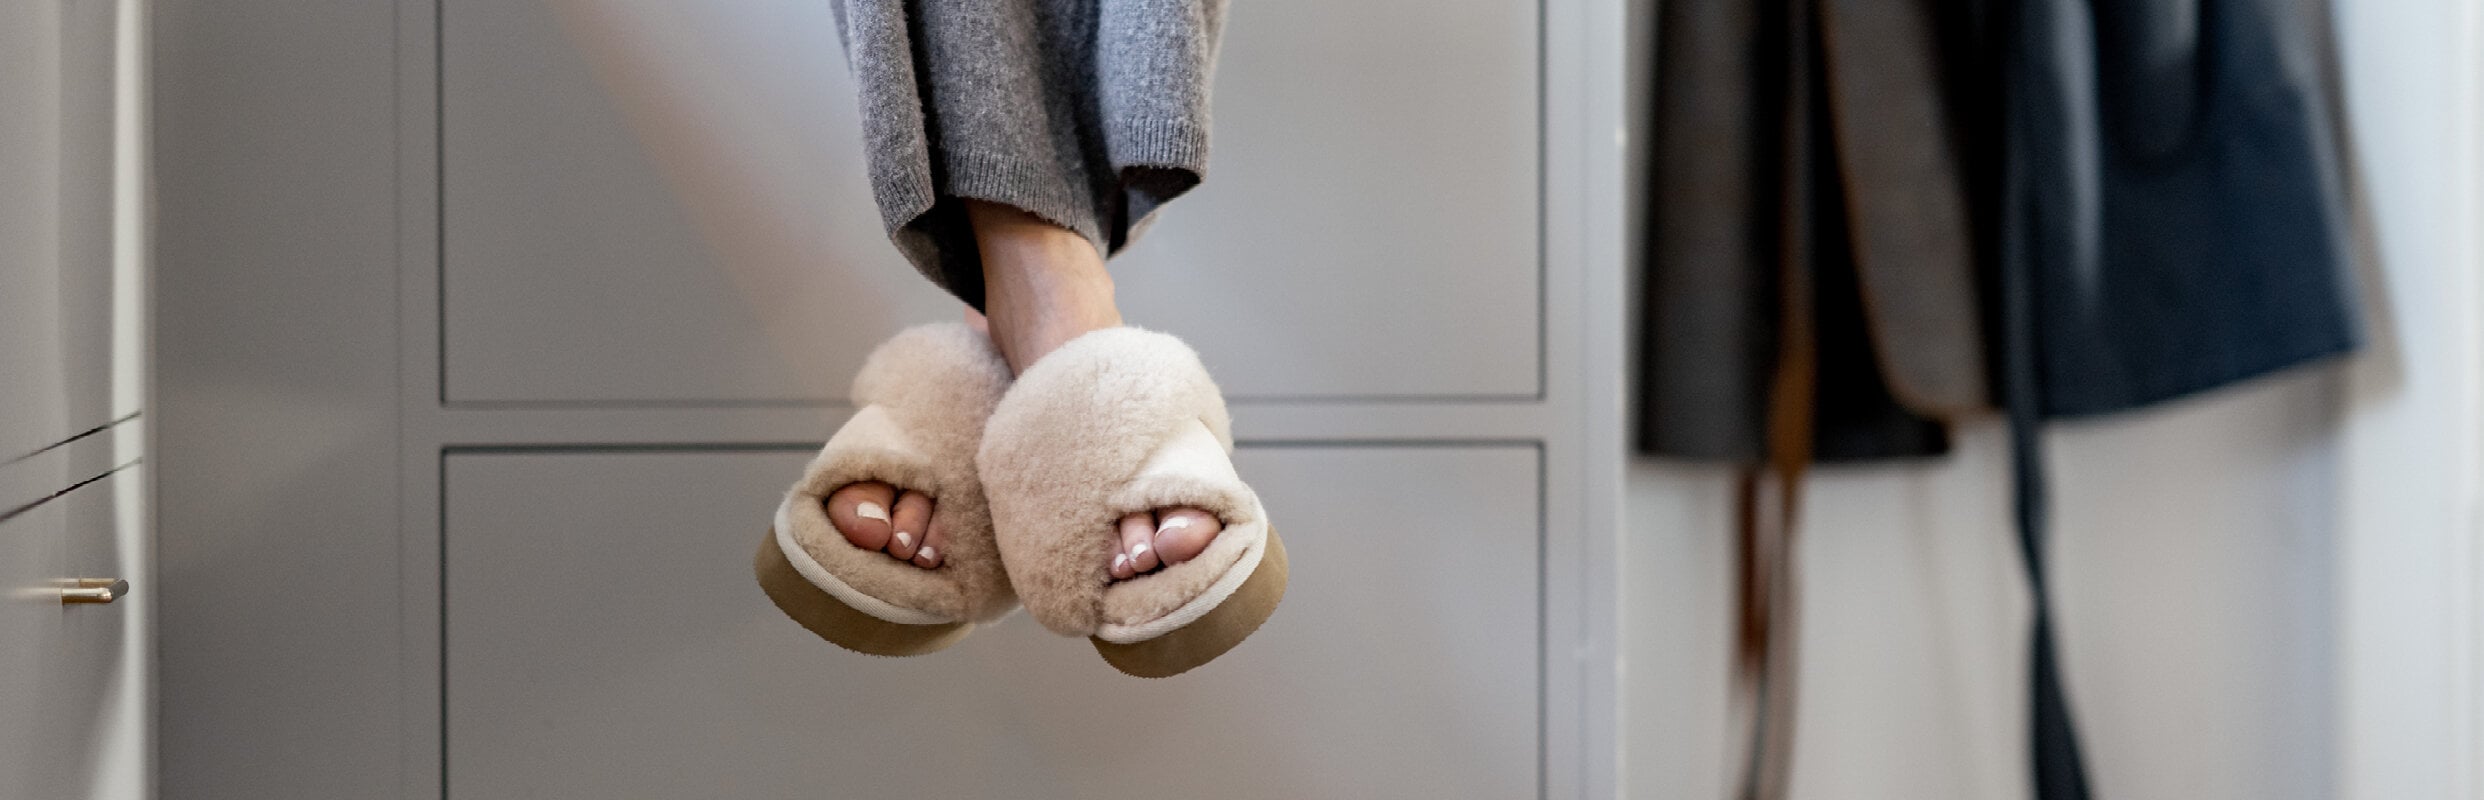 Sheepskin slippers for Women 